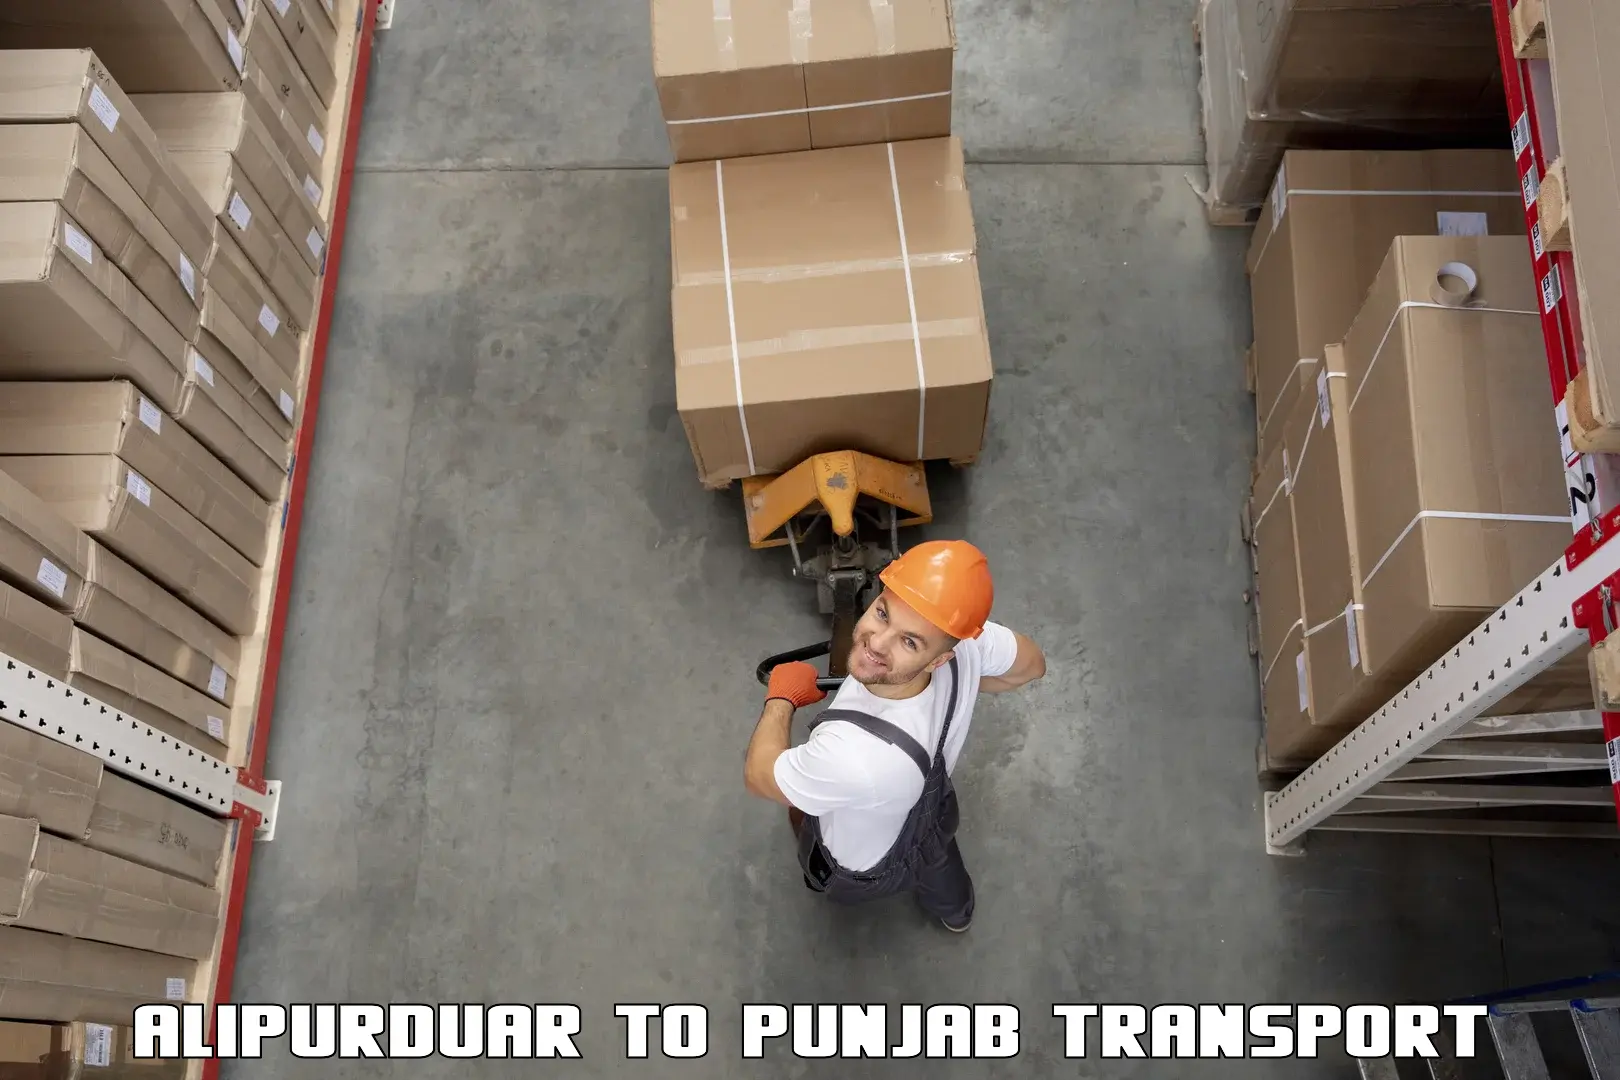 Furniture transport service Alipurduar to Machhiwara